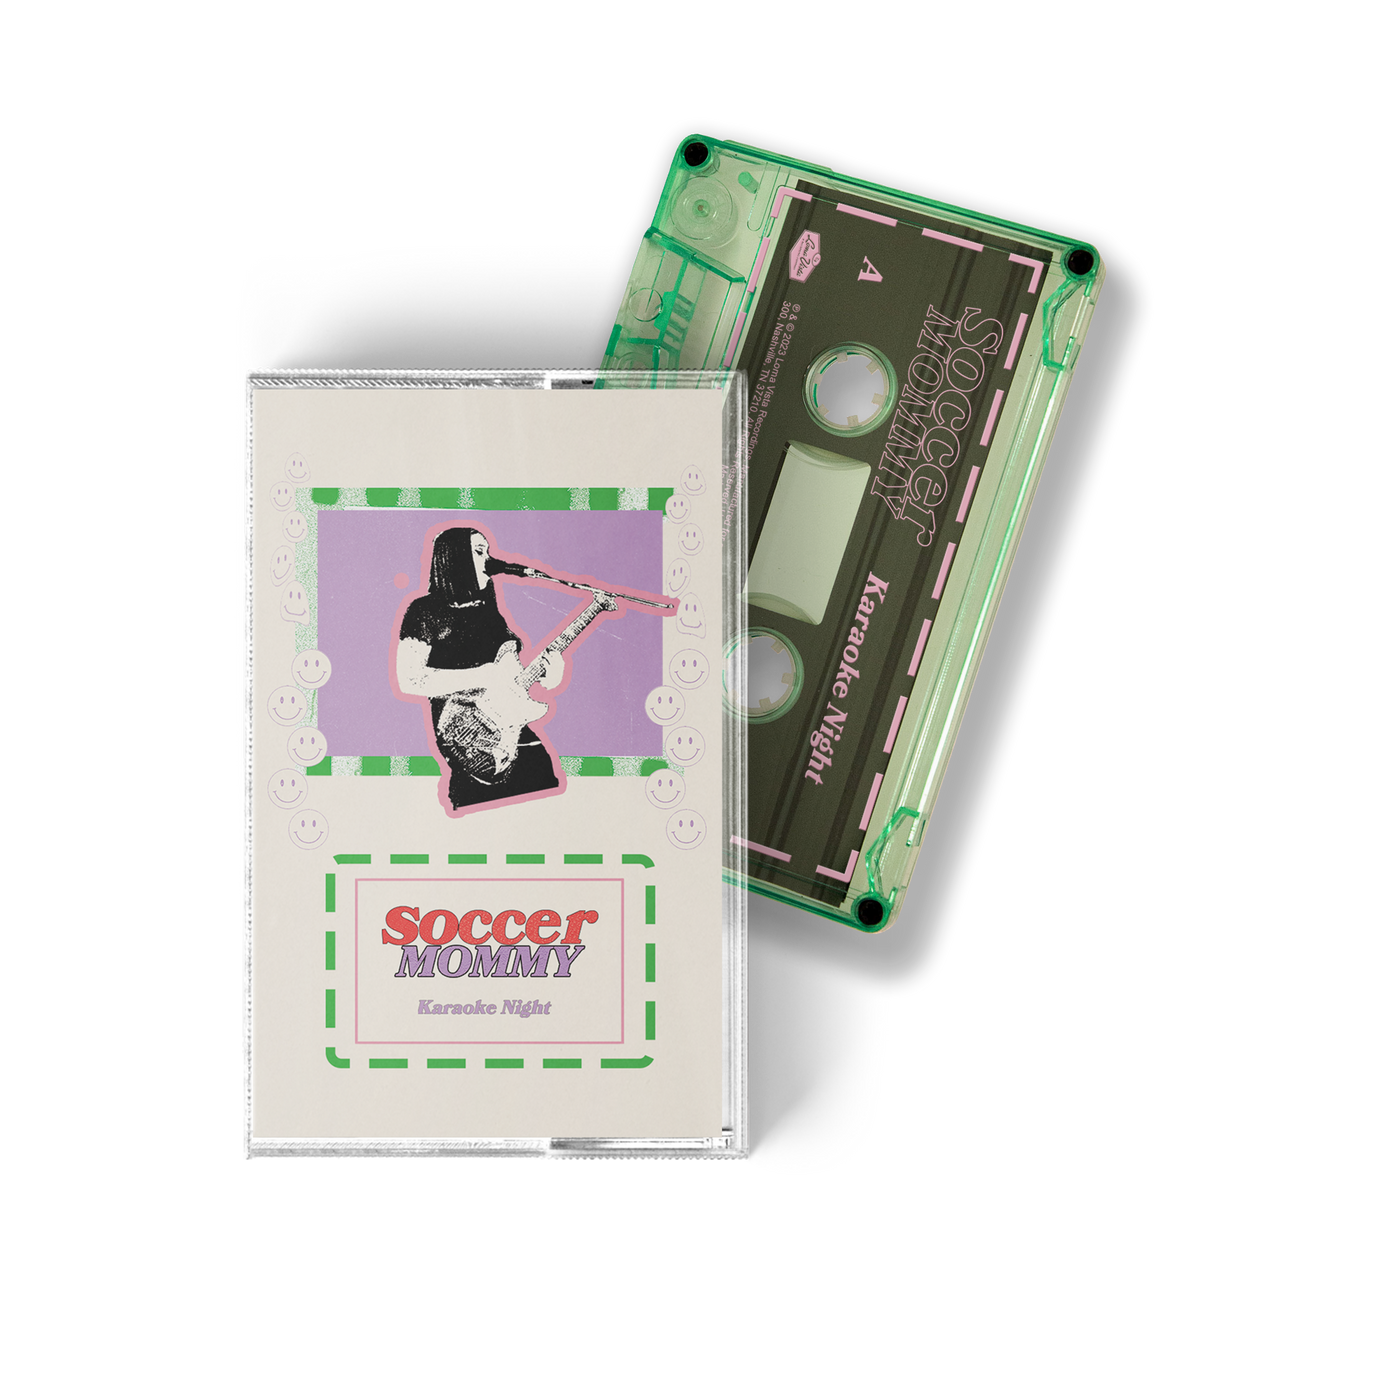 Karoake Night Mint Green Cassette